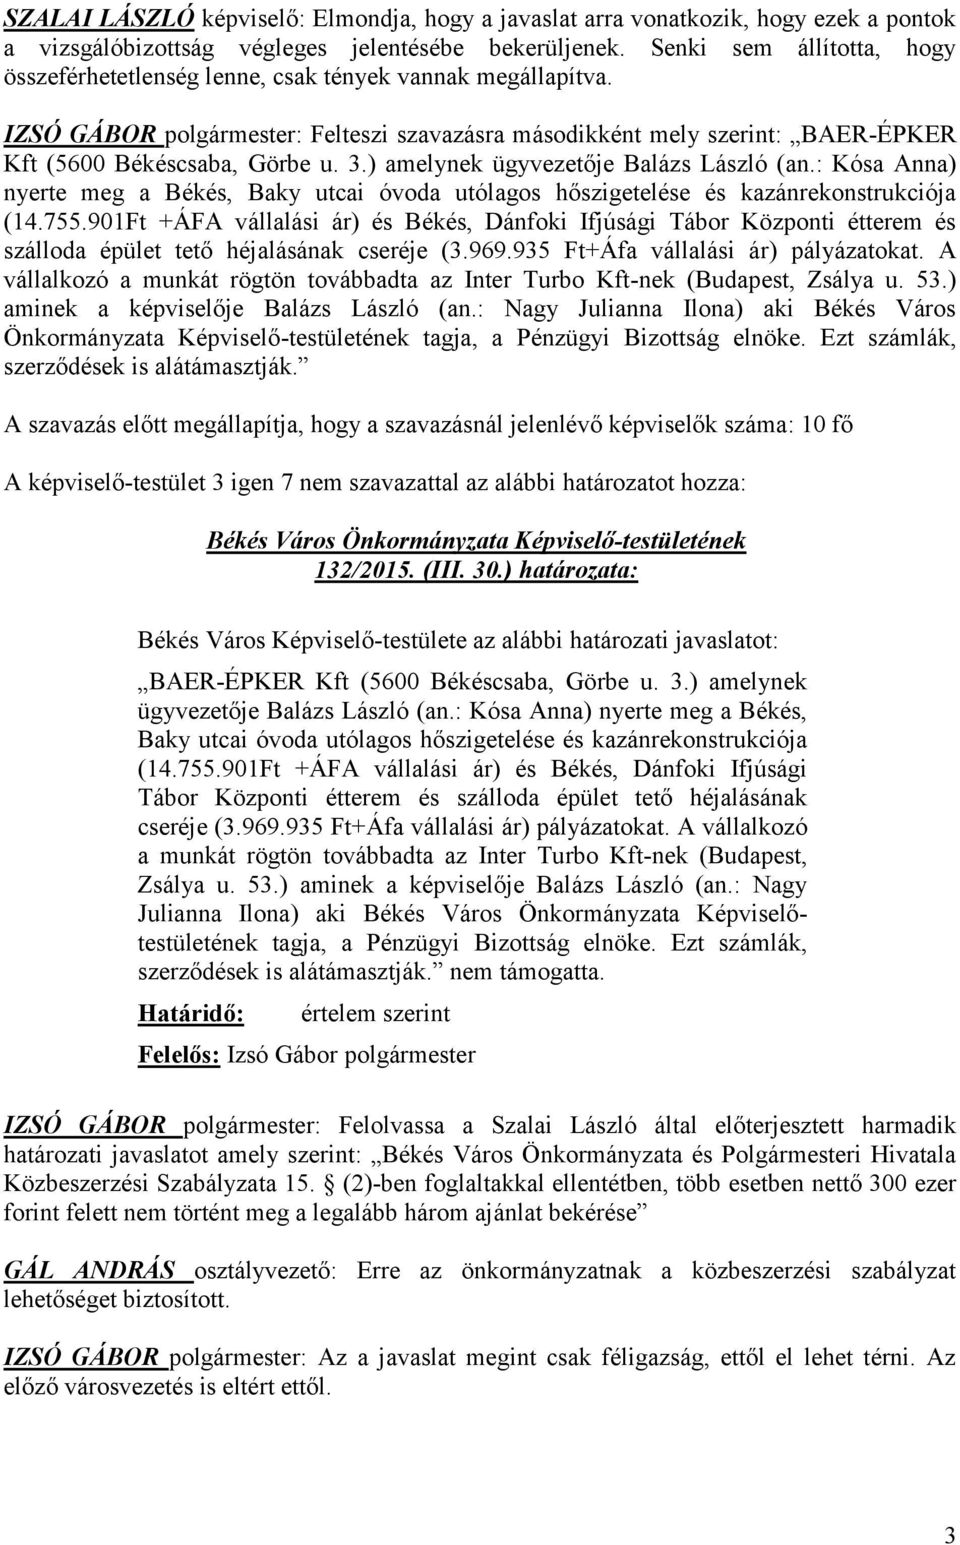 3.) amelynek ügyvezetője Balázs László (an.: Kósa Anna) nyerte meg a Békés, Baky utcai óvoda utólagos hőszigetelése és kazánrekonstrukciója (14.755.